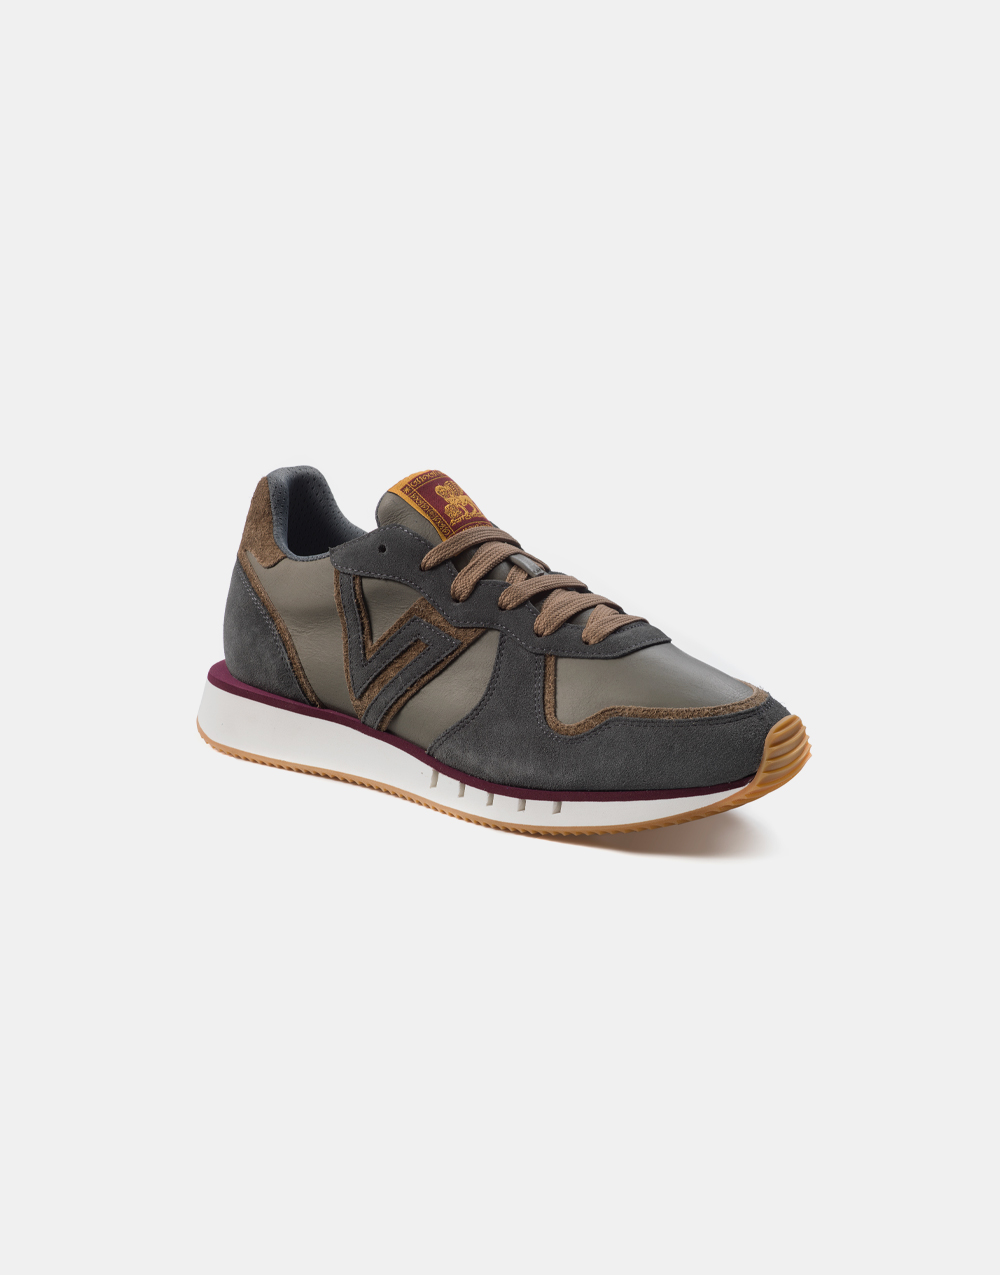 Venetodoc-running-scarpe-shoes-Laguna-Murazzi-grigia-3-4